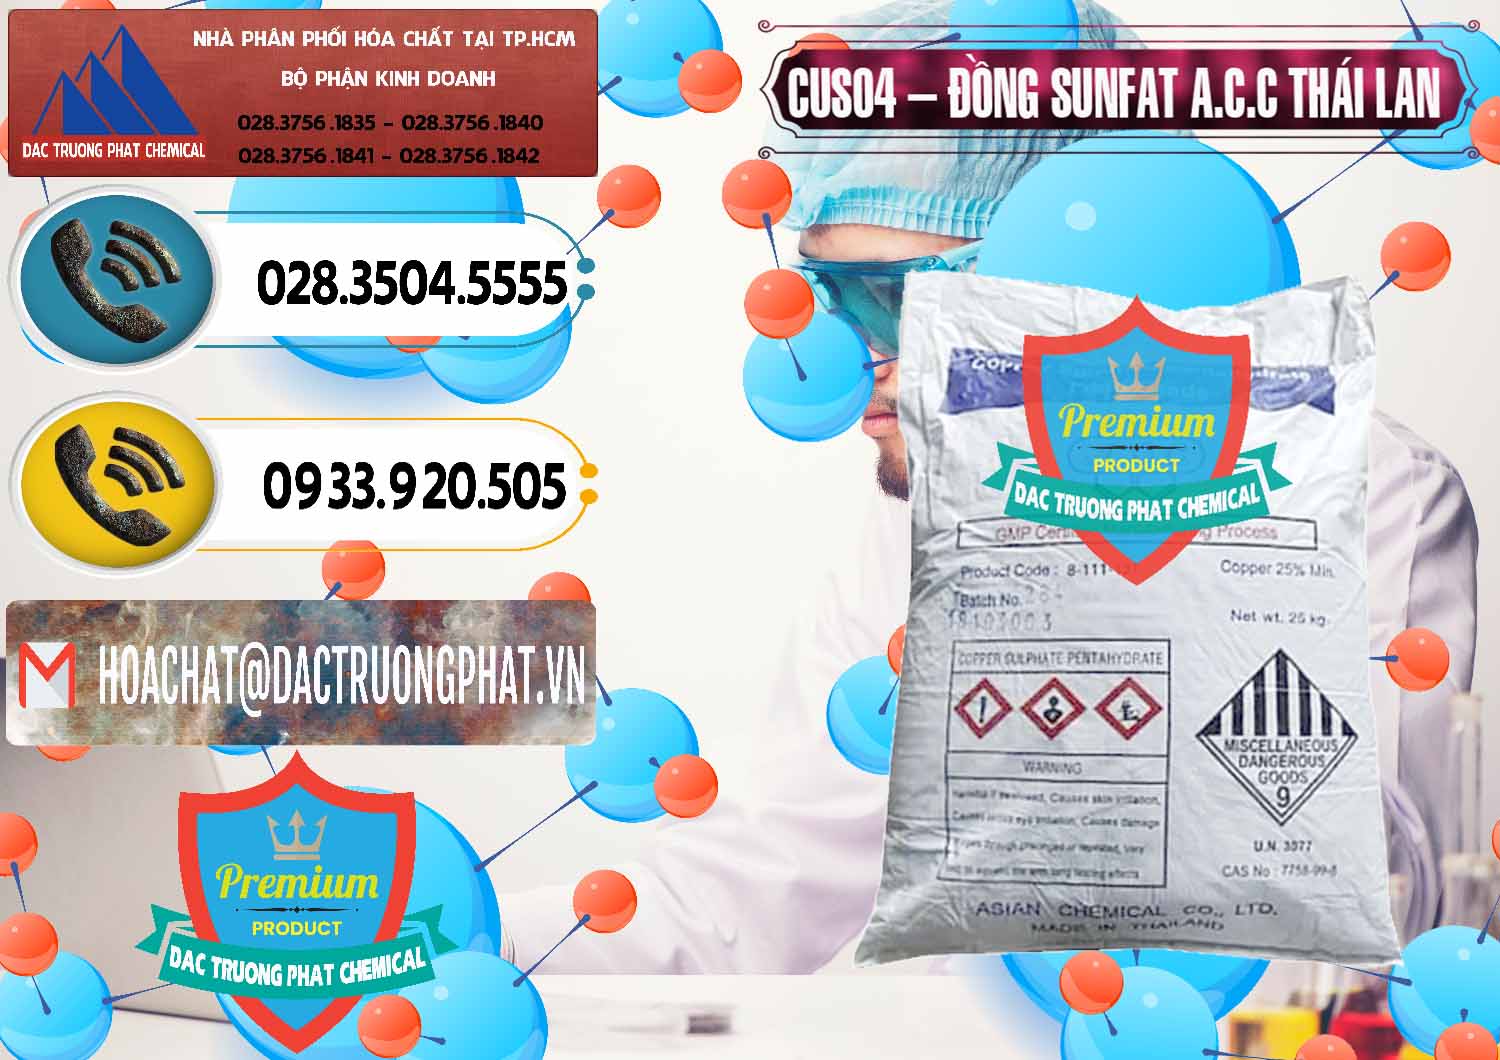 Đơn vị chuyên kinh doanh ( bán ) CuSO4 – Đồng Sunfat A.C.C Thái Lan - 0249 - Phân phối & nhập khẩu hóa chất tại TP.HCM - hoachatdetnhuom.vn